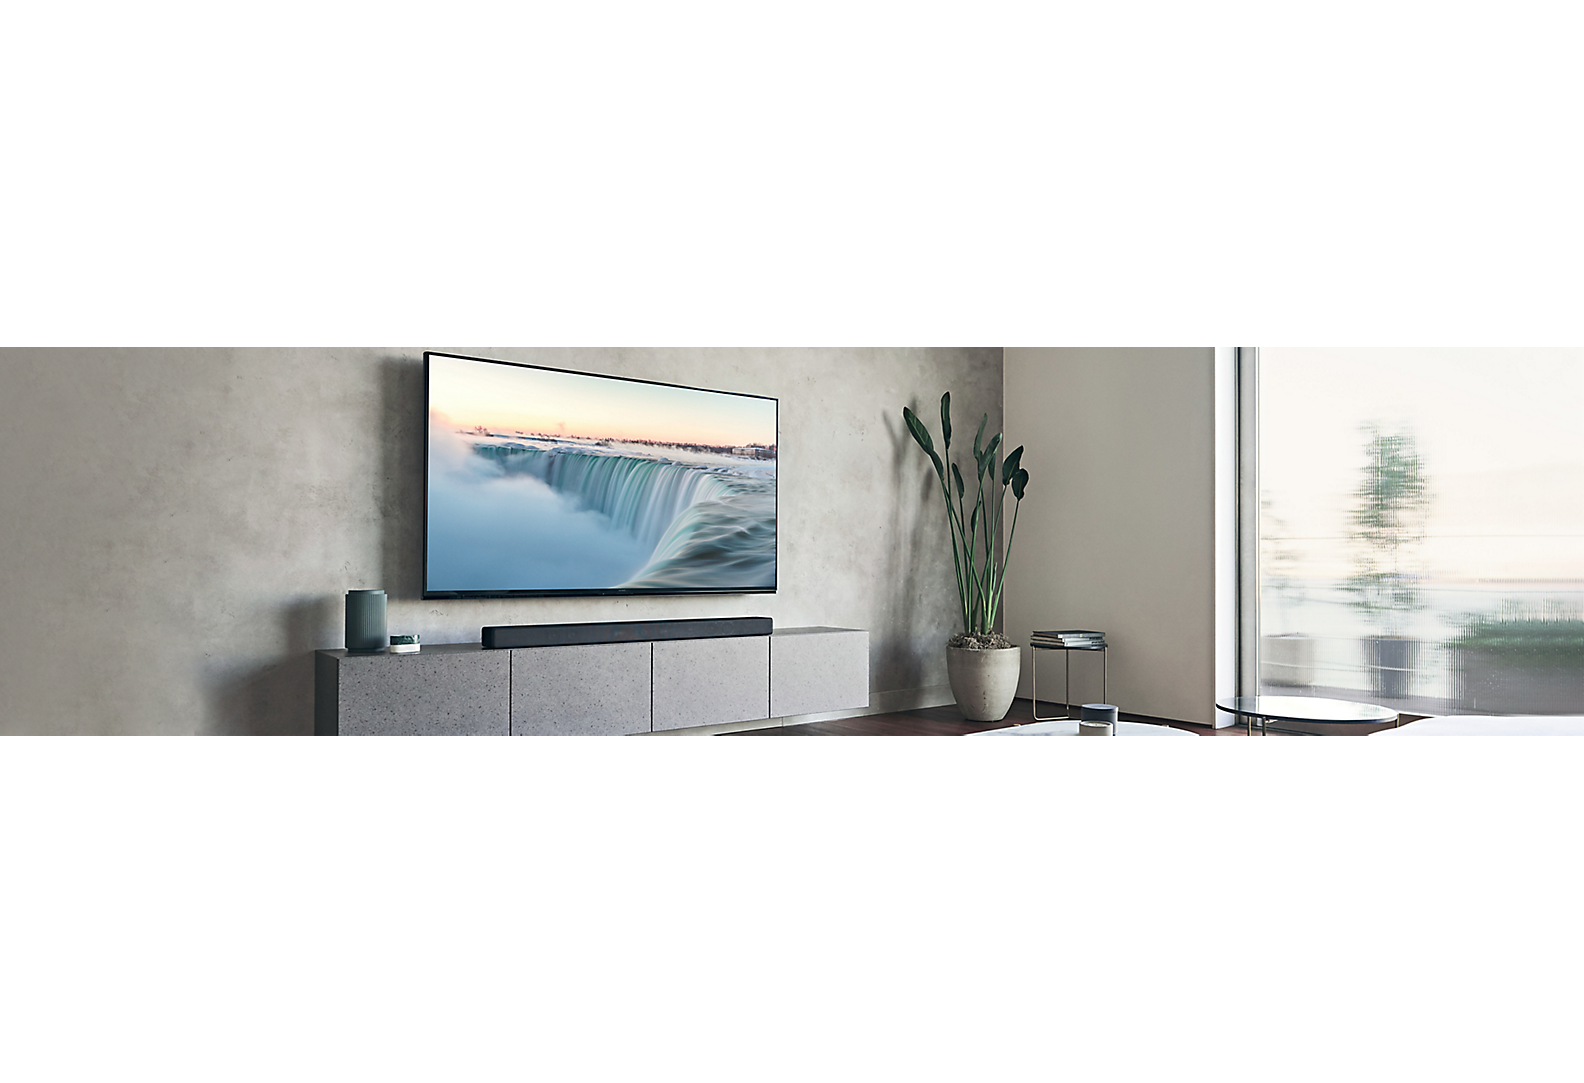 TV montada numa parede cinzenta numa sala de estar em tons cinza com vários artigos de decoração.